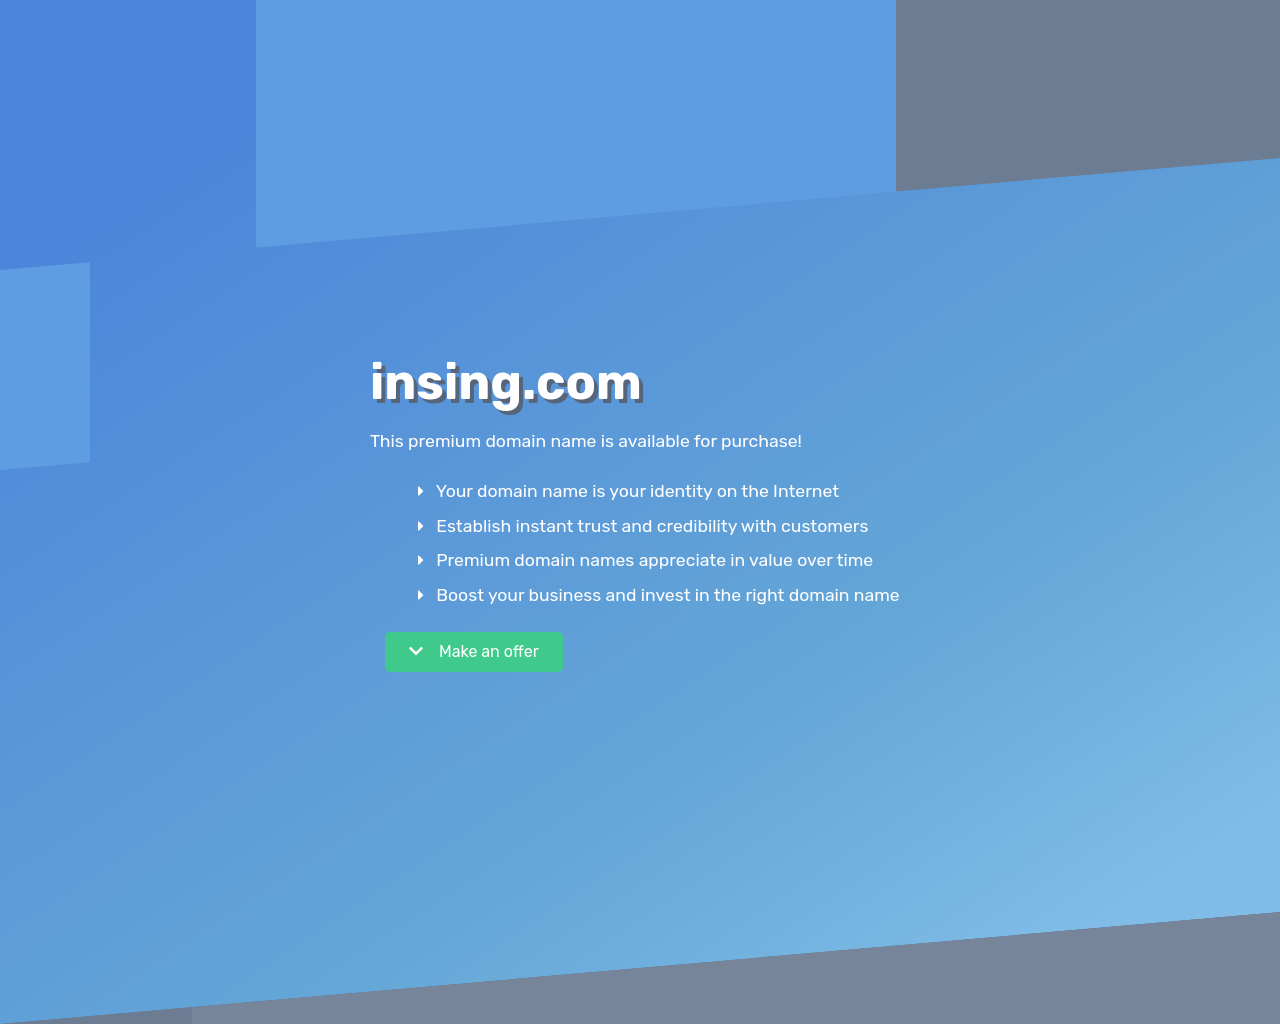 insing.com